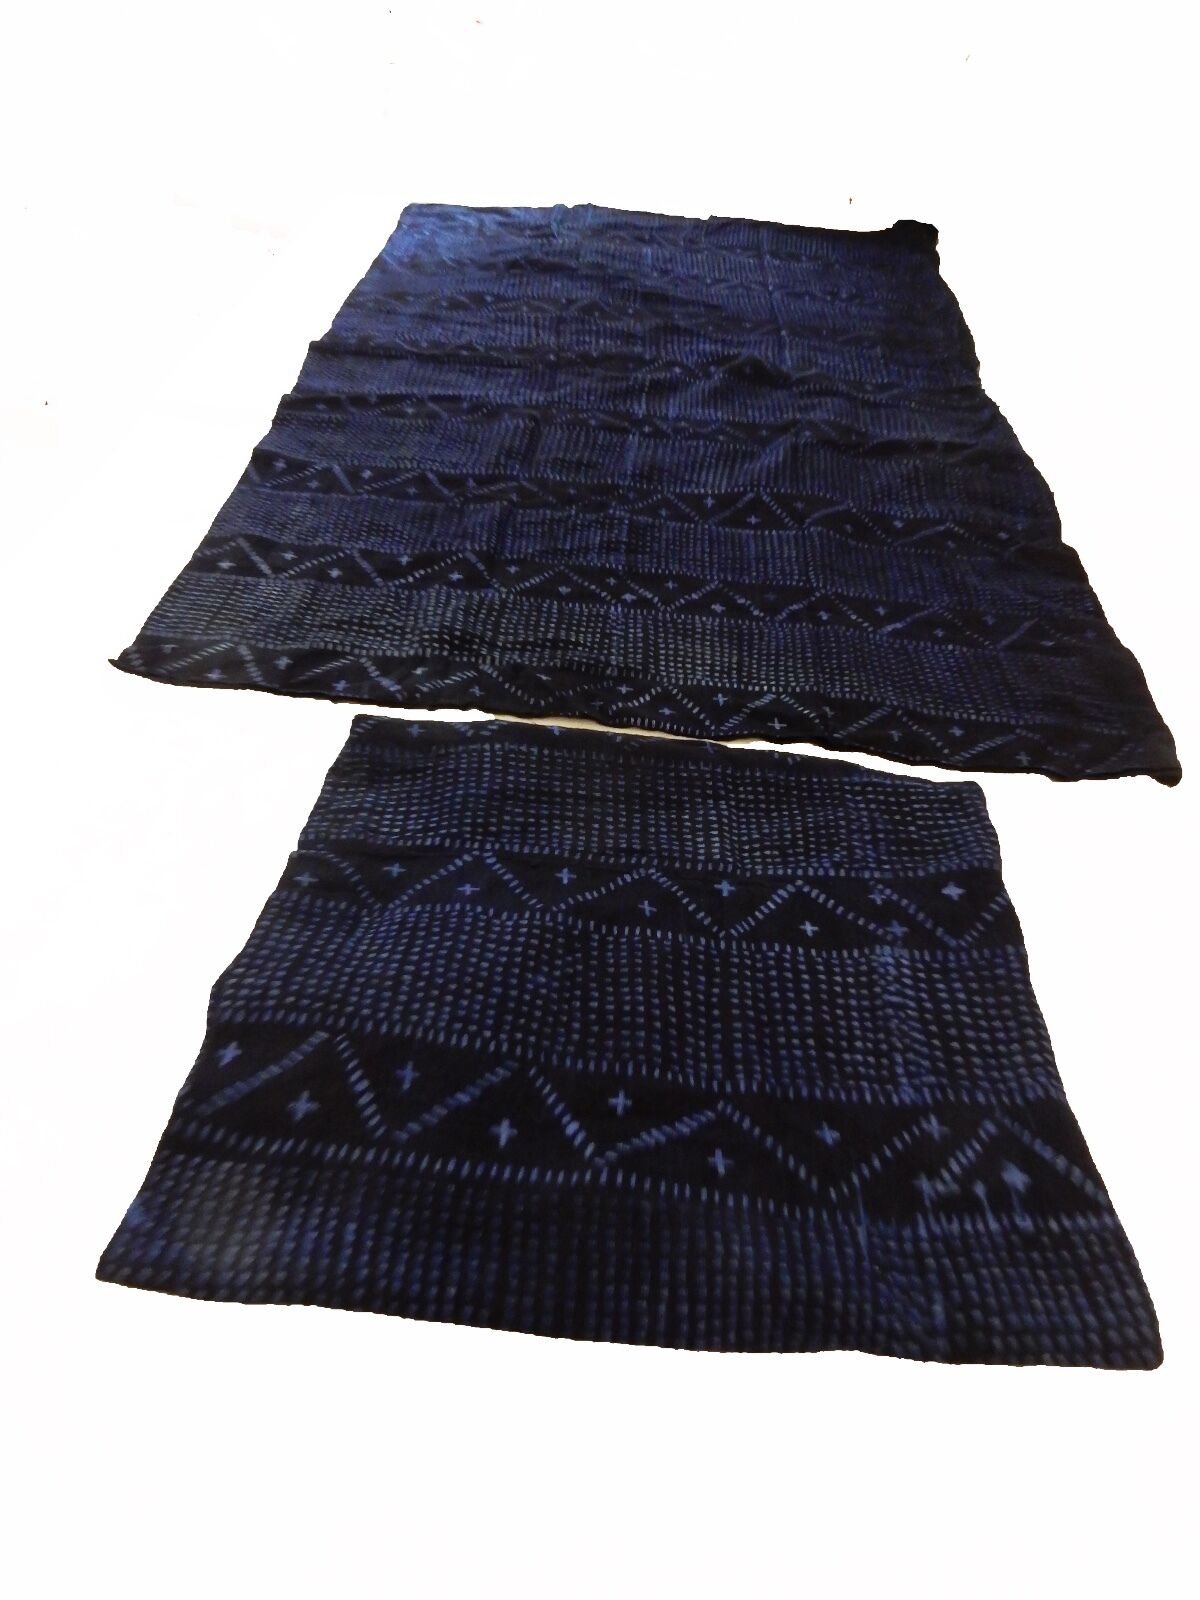 Malian Indigo Mud Cloth Textiles S/2 46" by 56" # 11